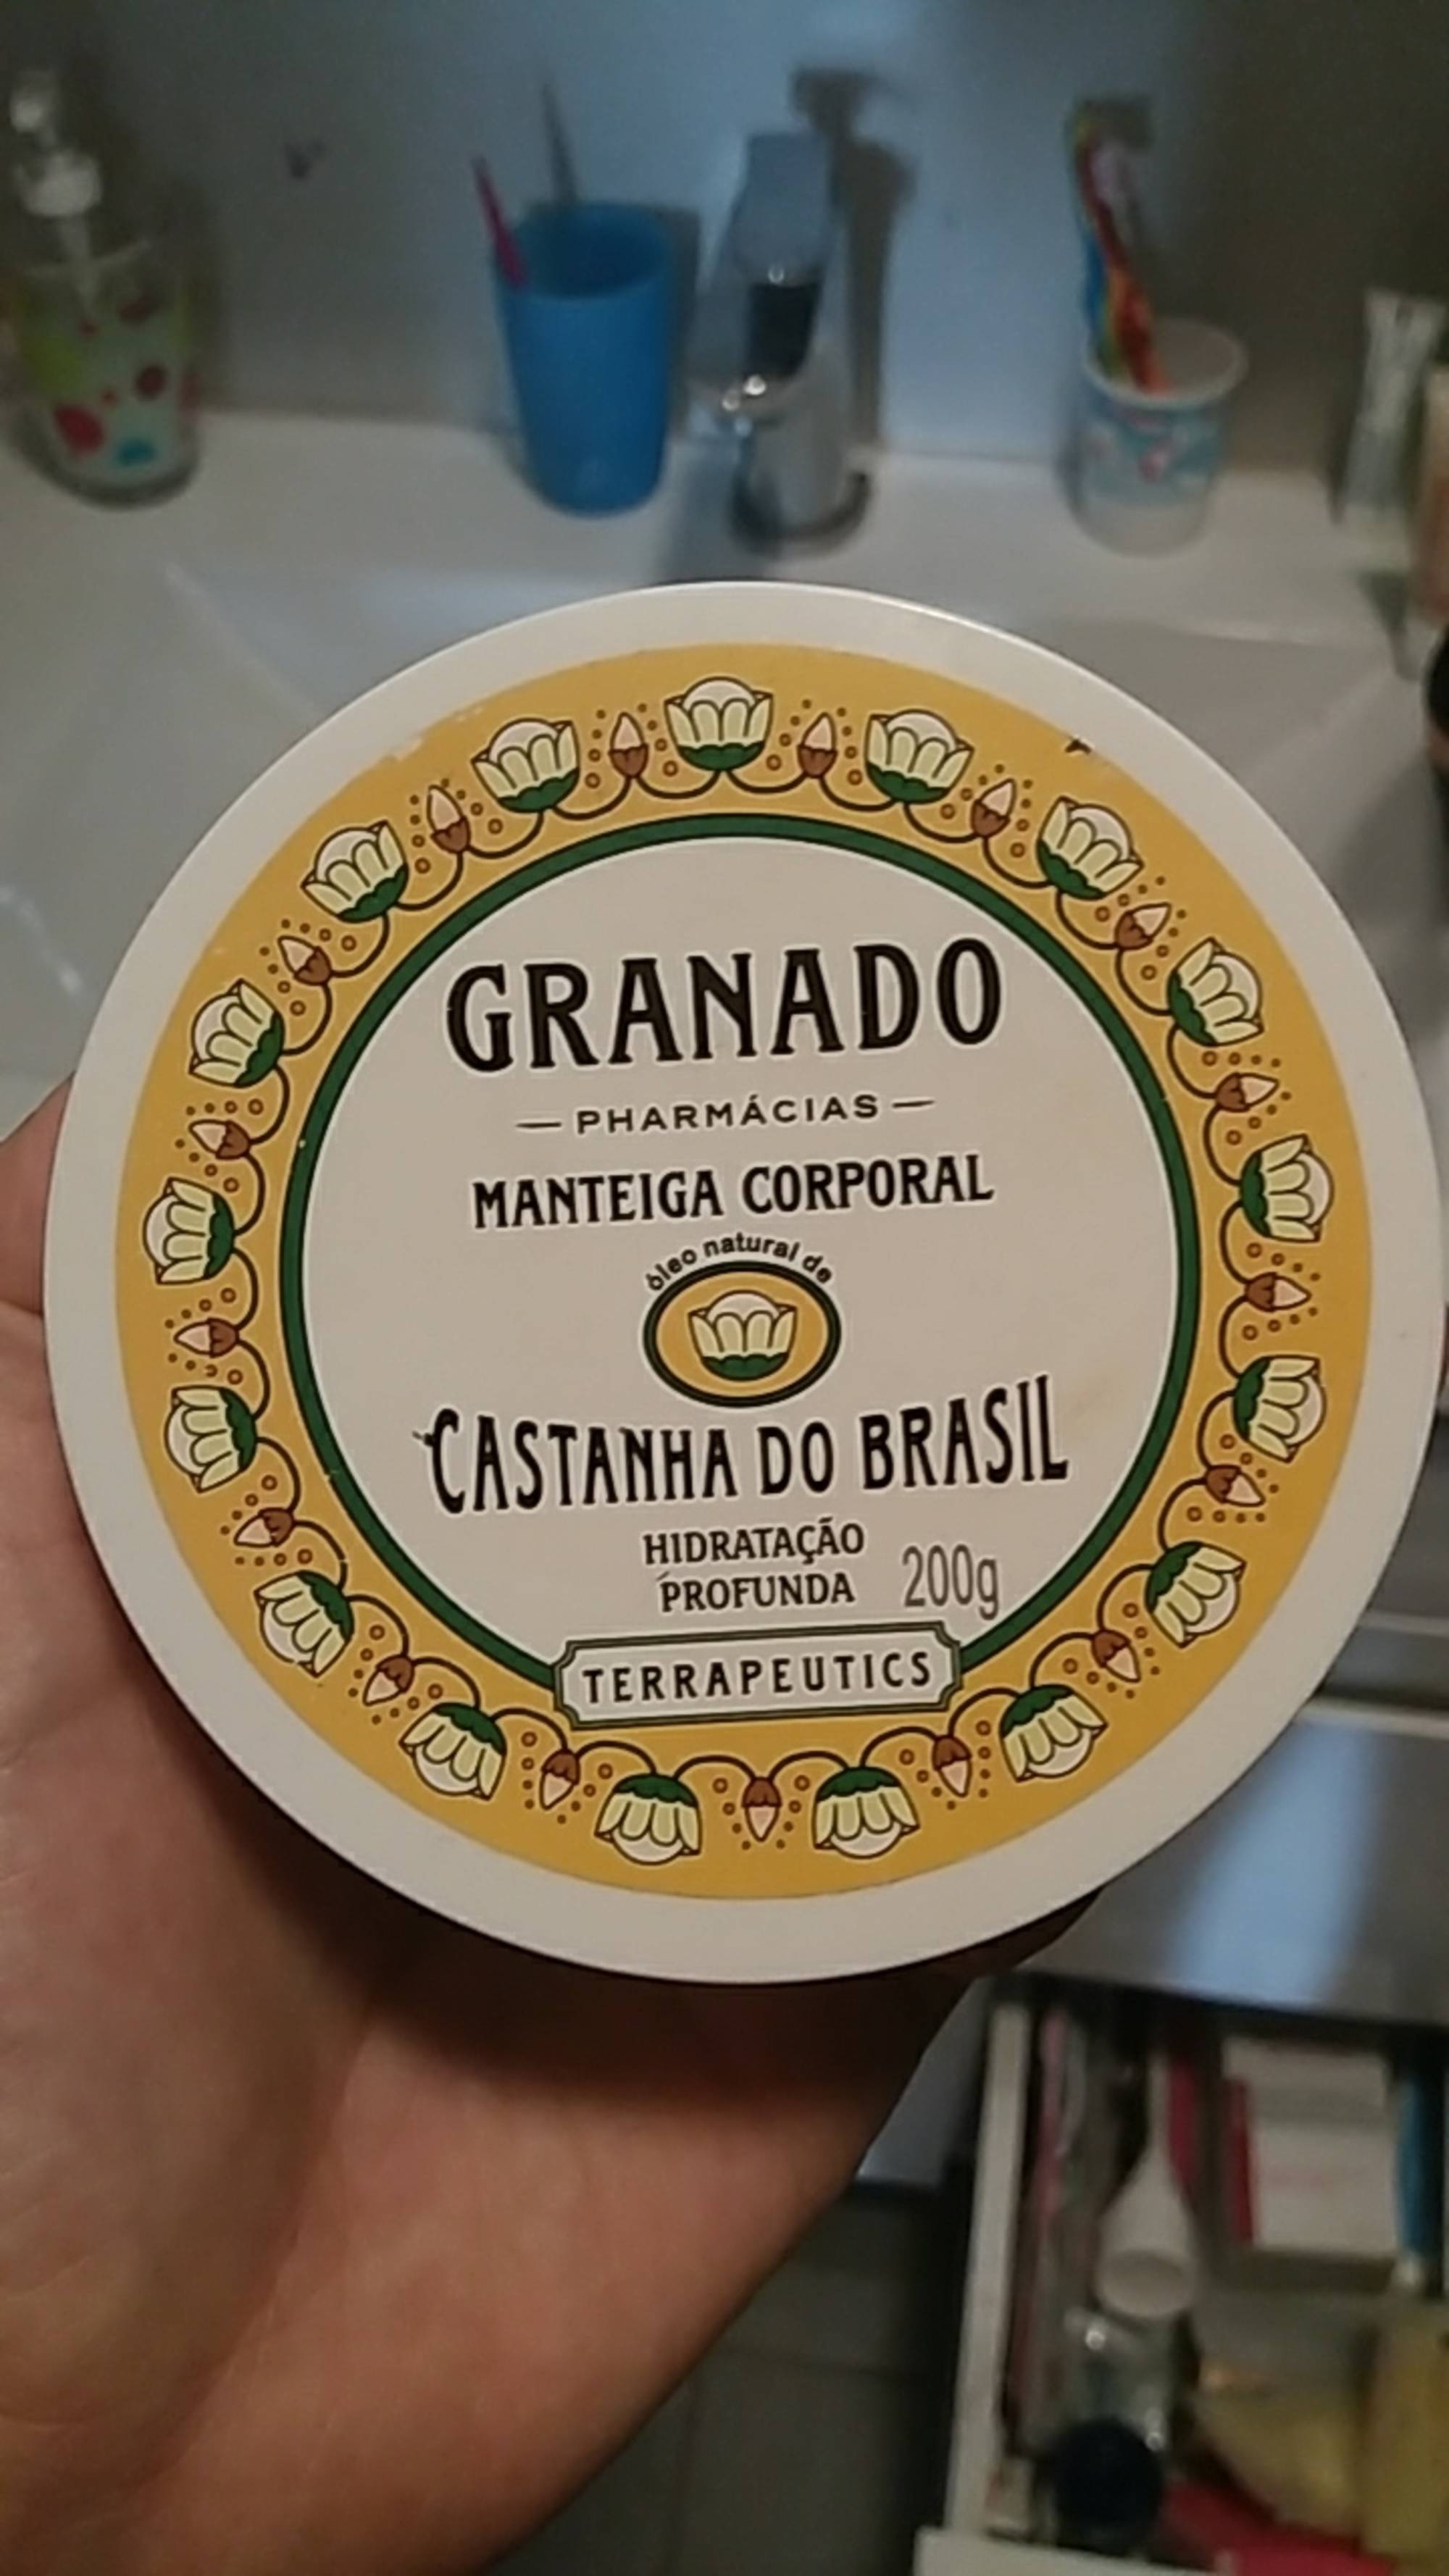 GRANADO - Castanha do brasil - Manteiga corporal